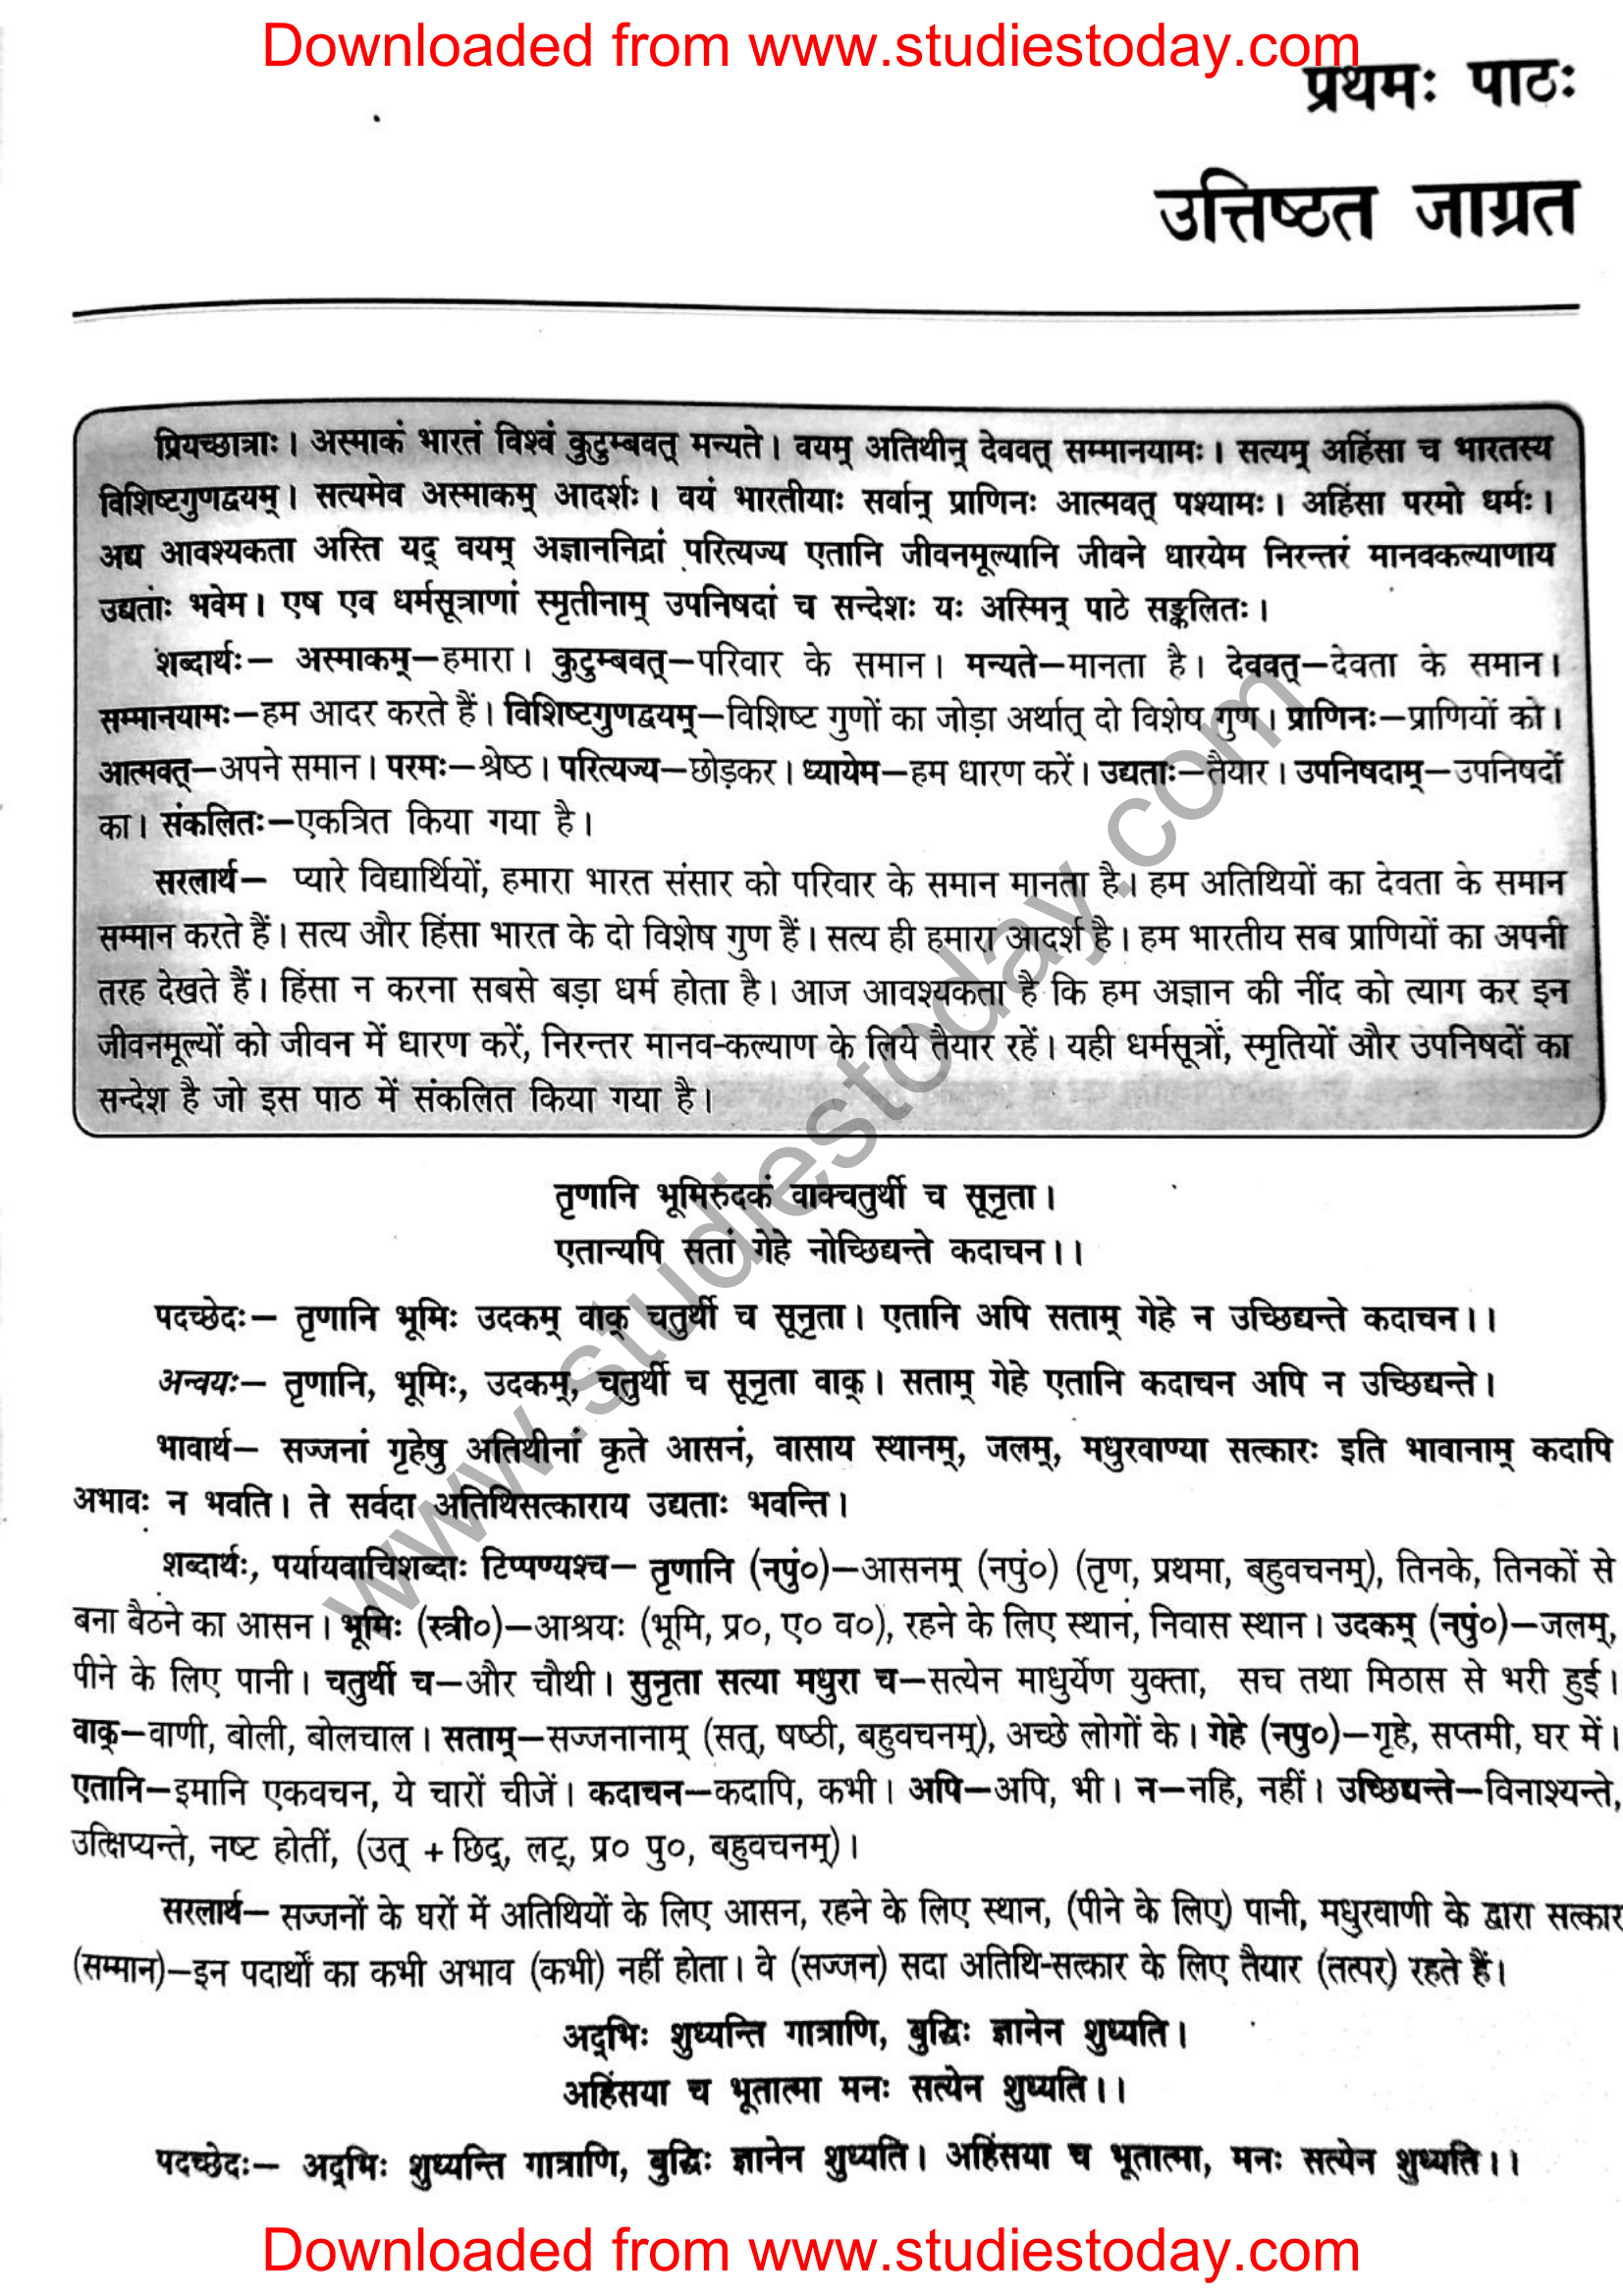 ncert-solutions-class-12-sanskrit-ritikia-chapter-1-01